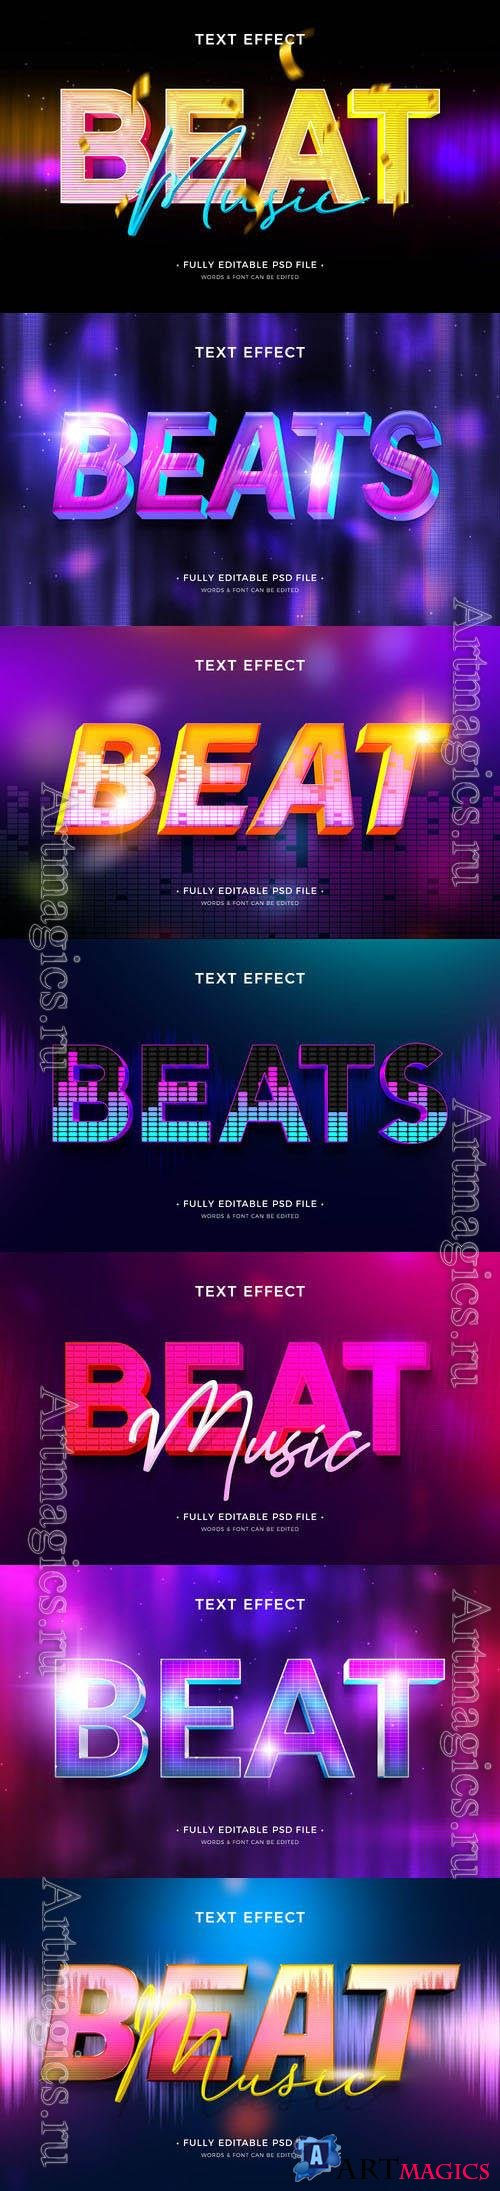 PSD beat text effect